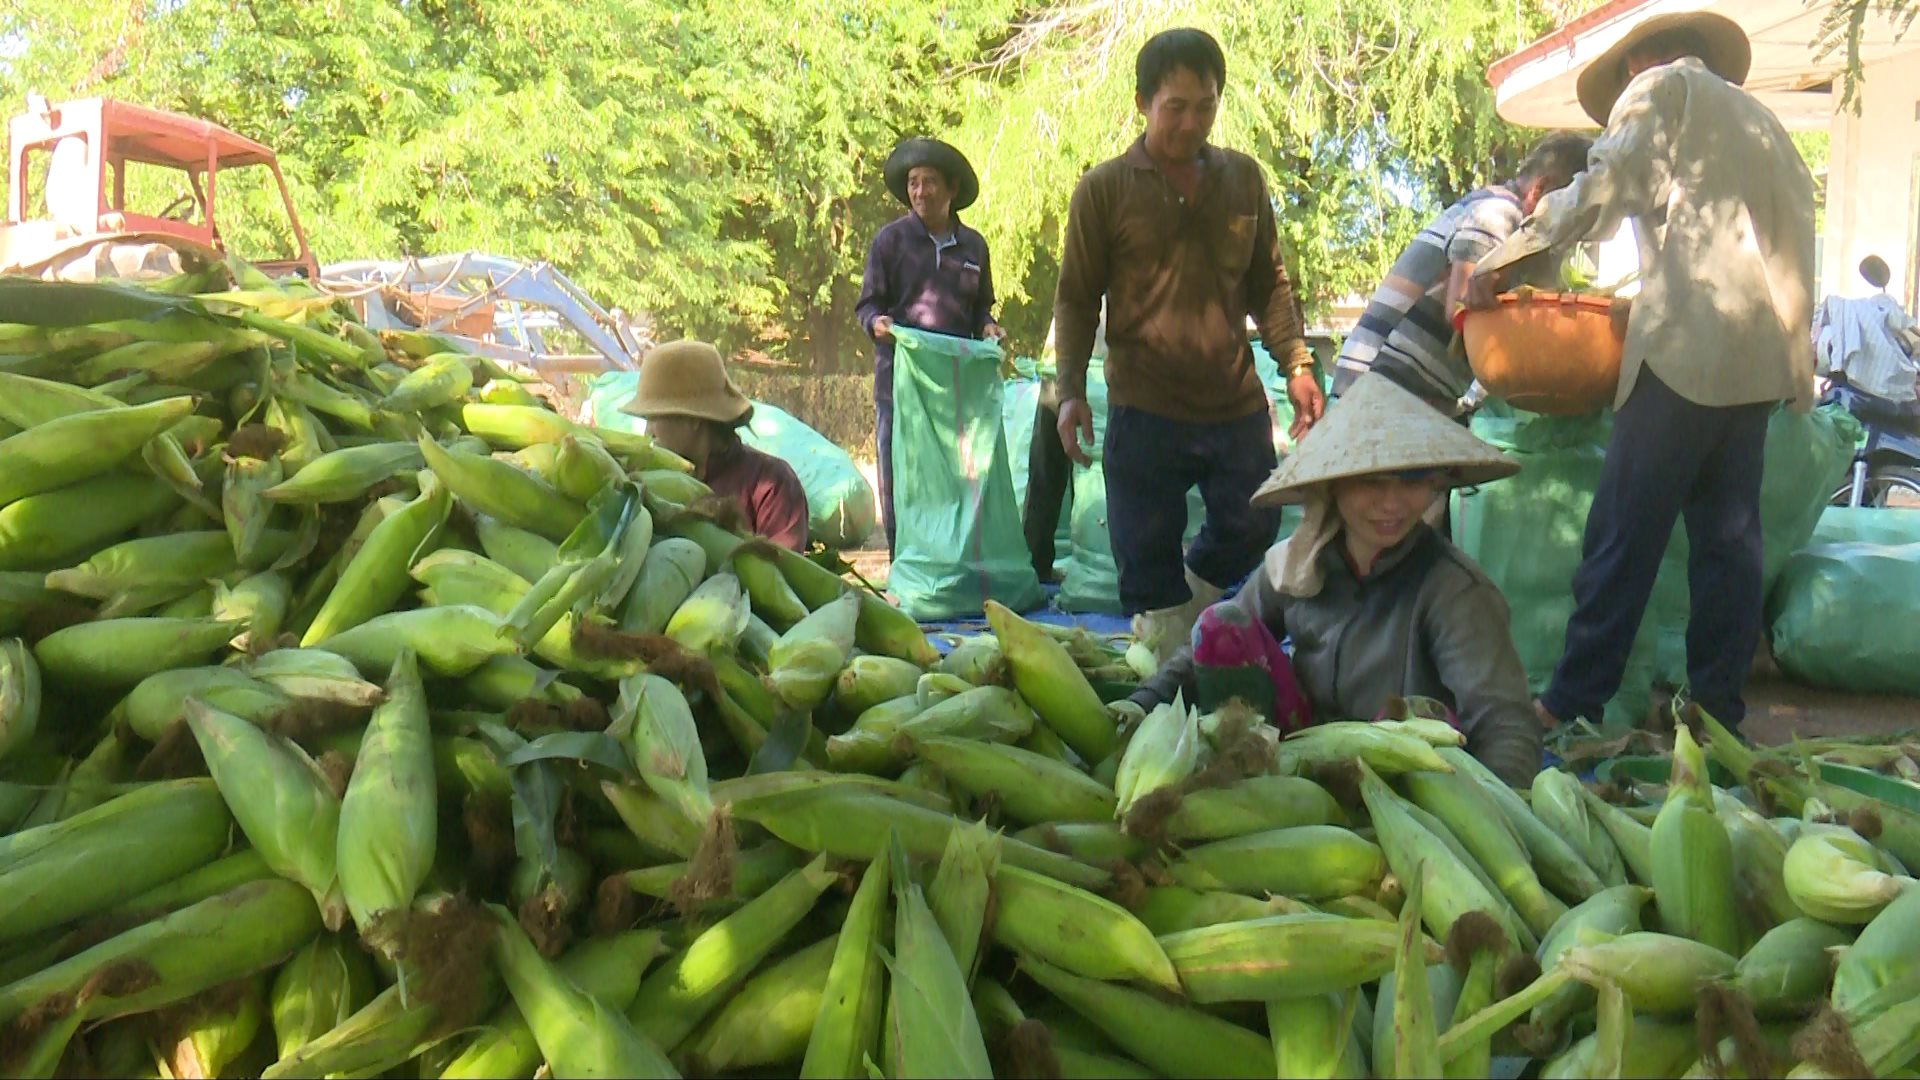 Trồng bắp nếp kiểu gì mà nông dân ở một xã của Bình Thuận nói lãi hơn xạ lúa gấp 2-3 lần?- Ảnh 2.